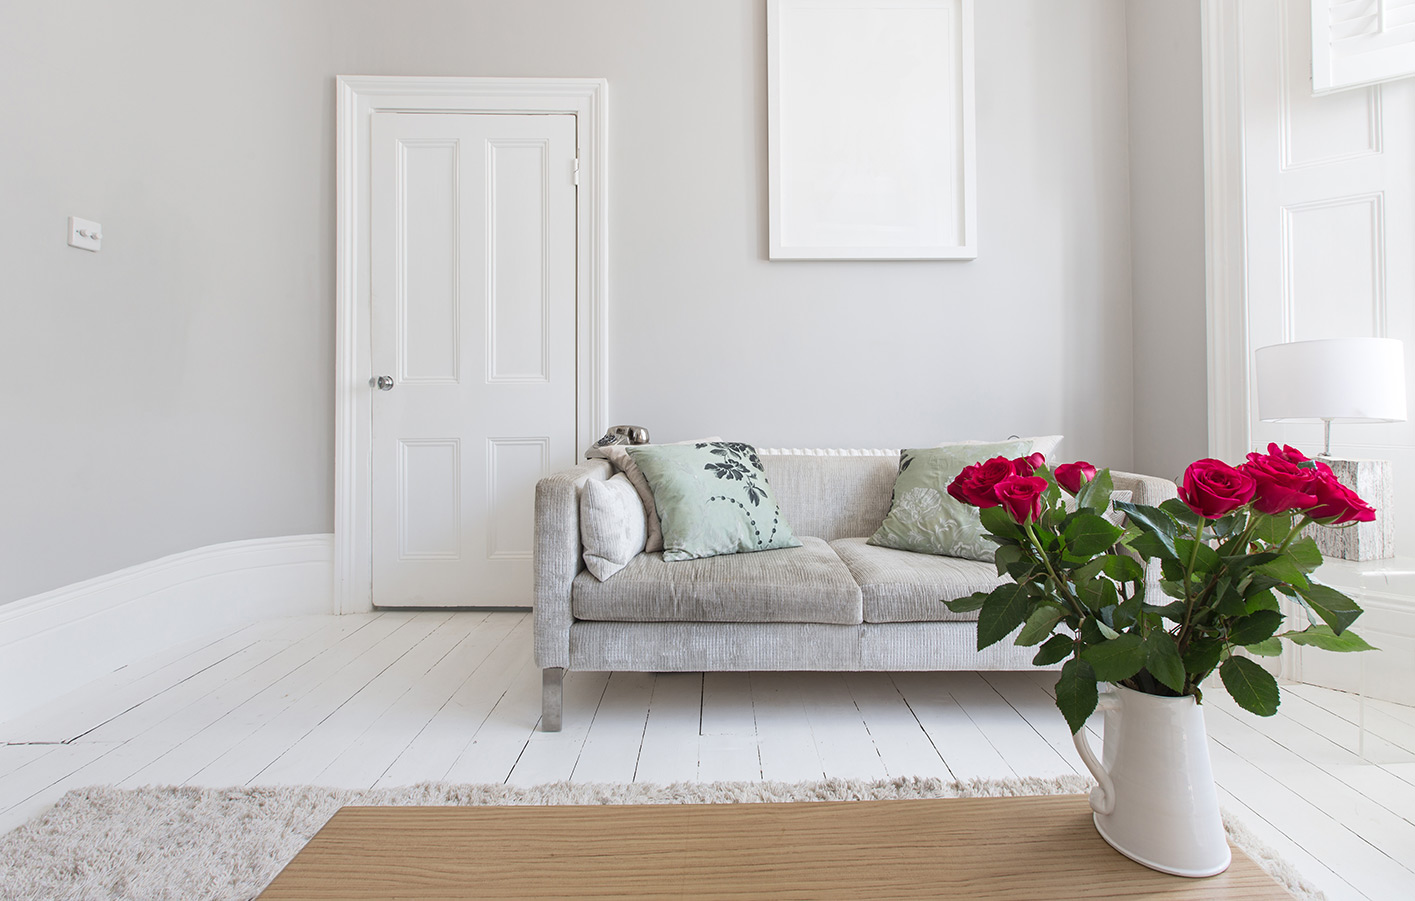 Weiße Zimmertür in einem Wohnzimmer mit einer hellen Couch und Rosen auf dem Tisch.